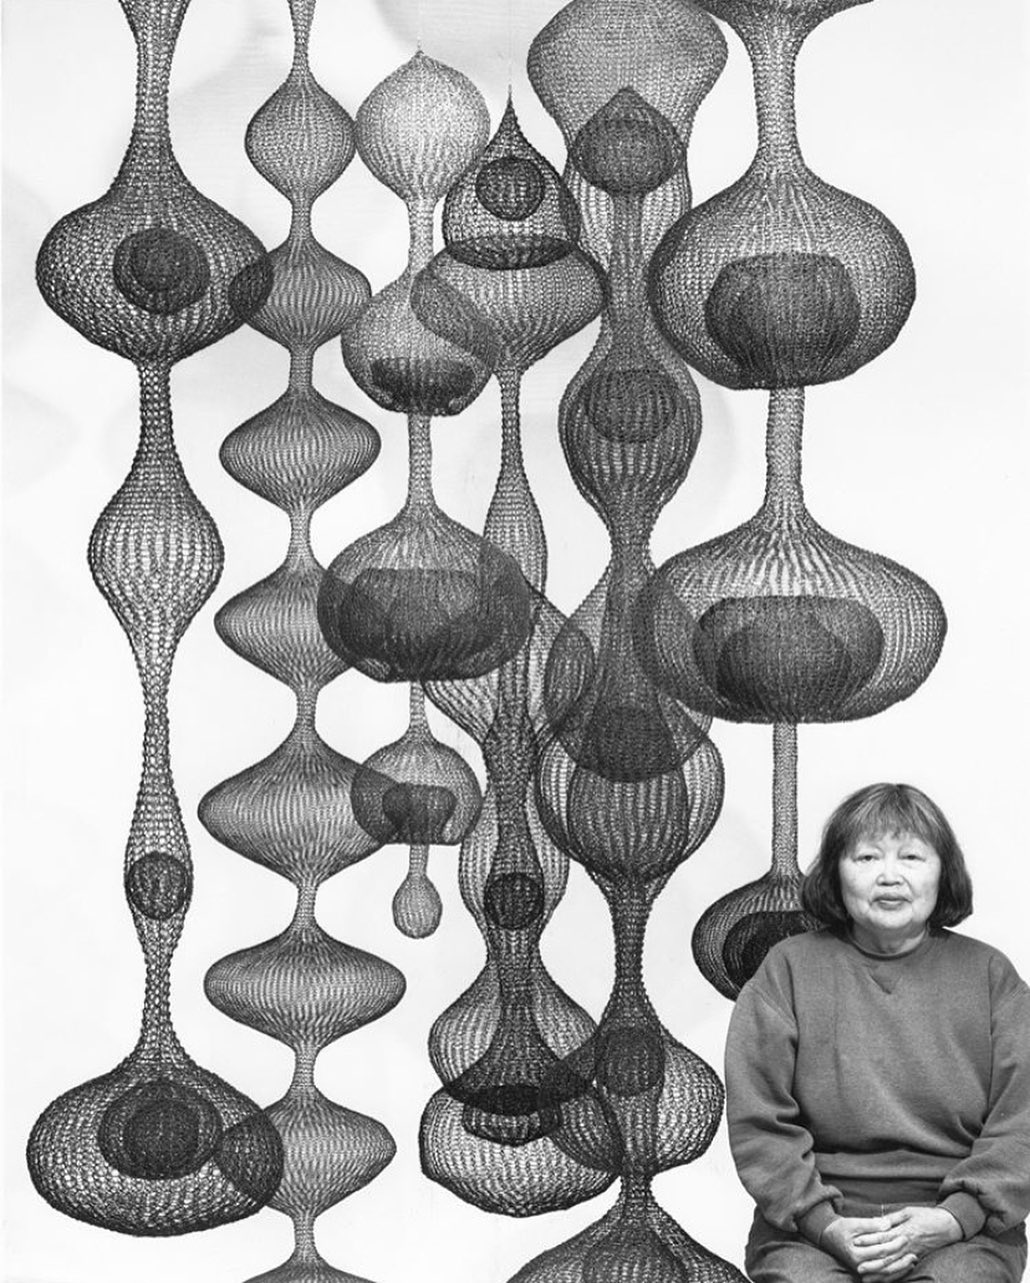 The Intricate Metal Sculptures of Ruth Asawa